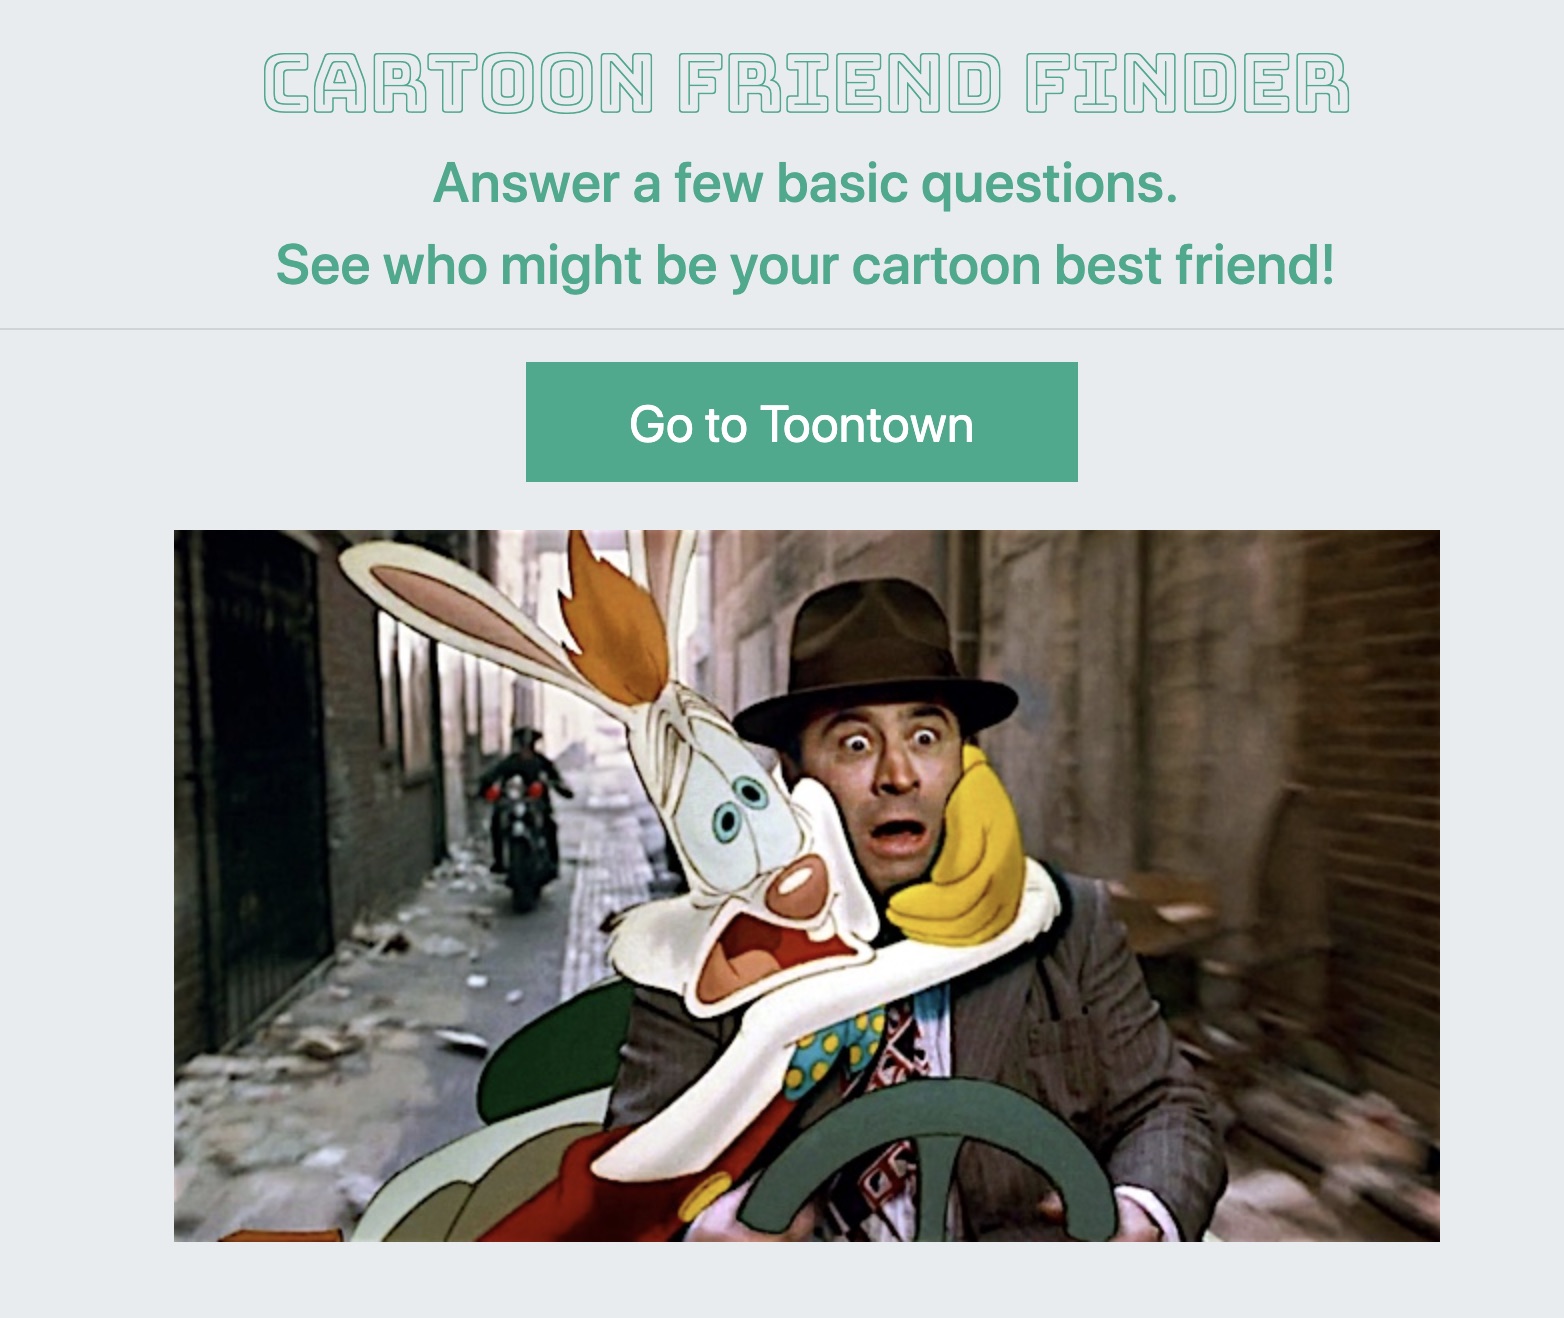 Display Cartoon Friend Finder page